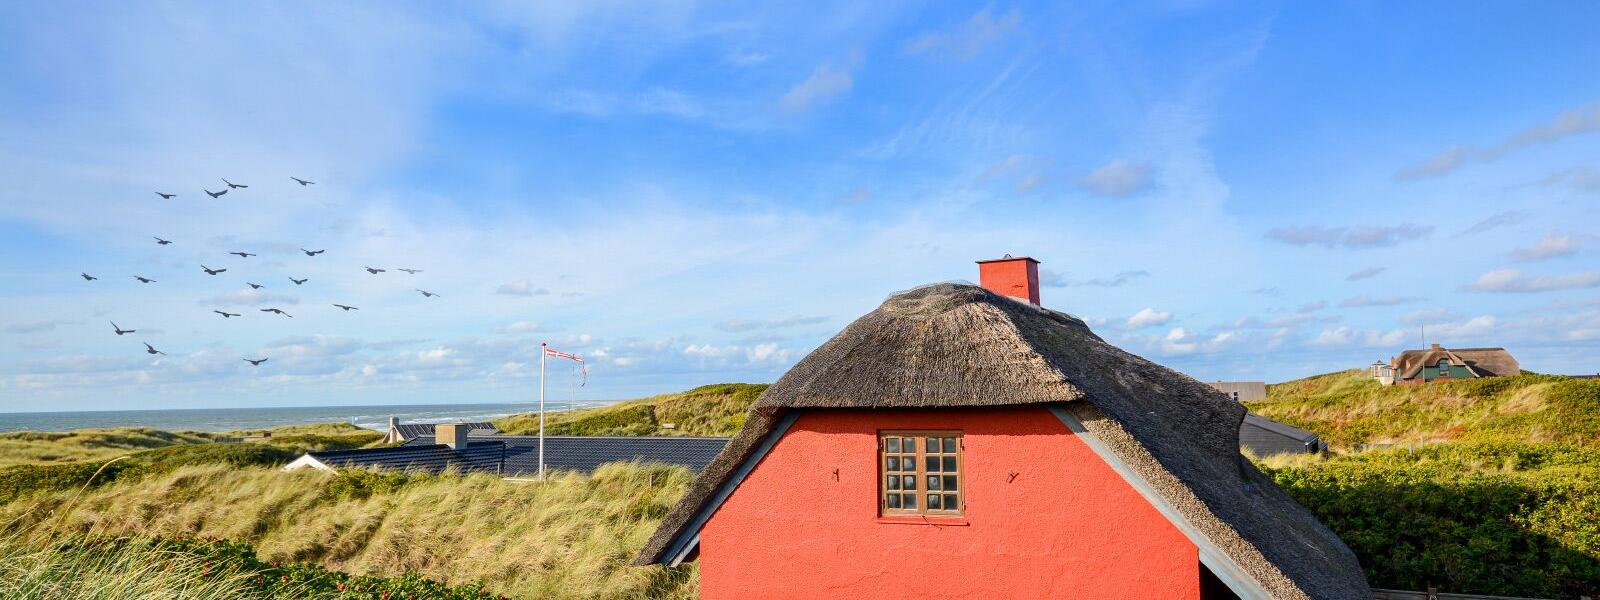 Rotes Haus in Jütland, Dänemark